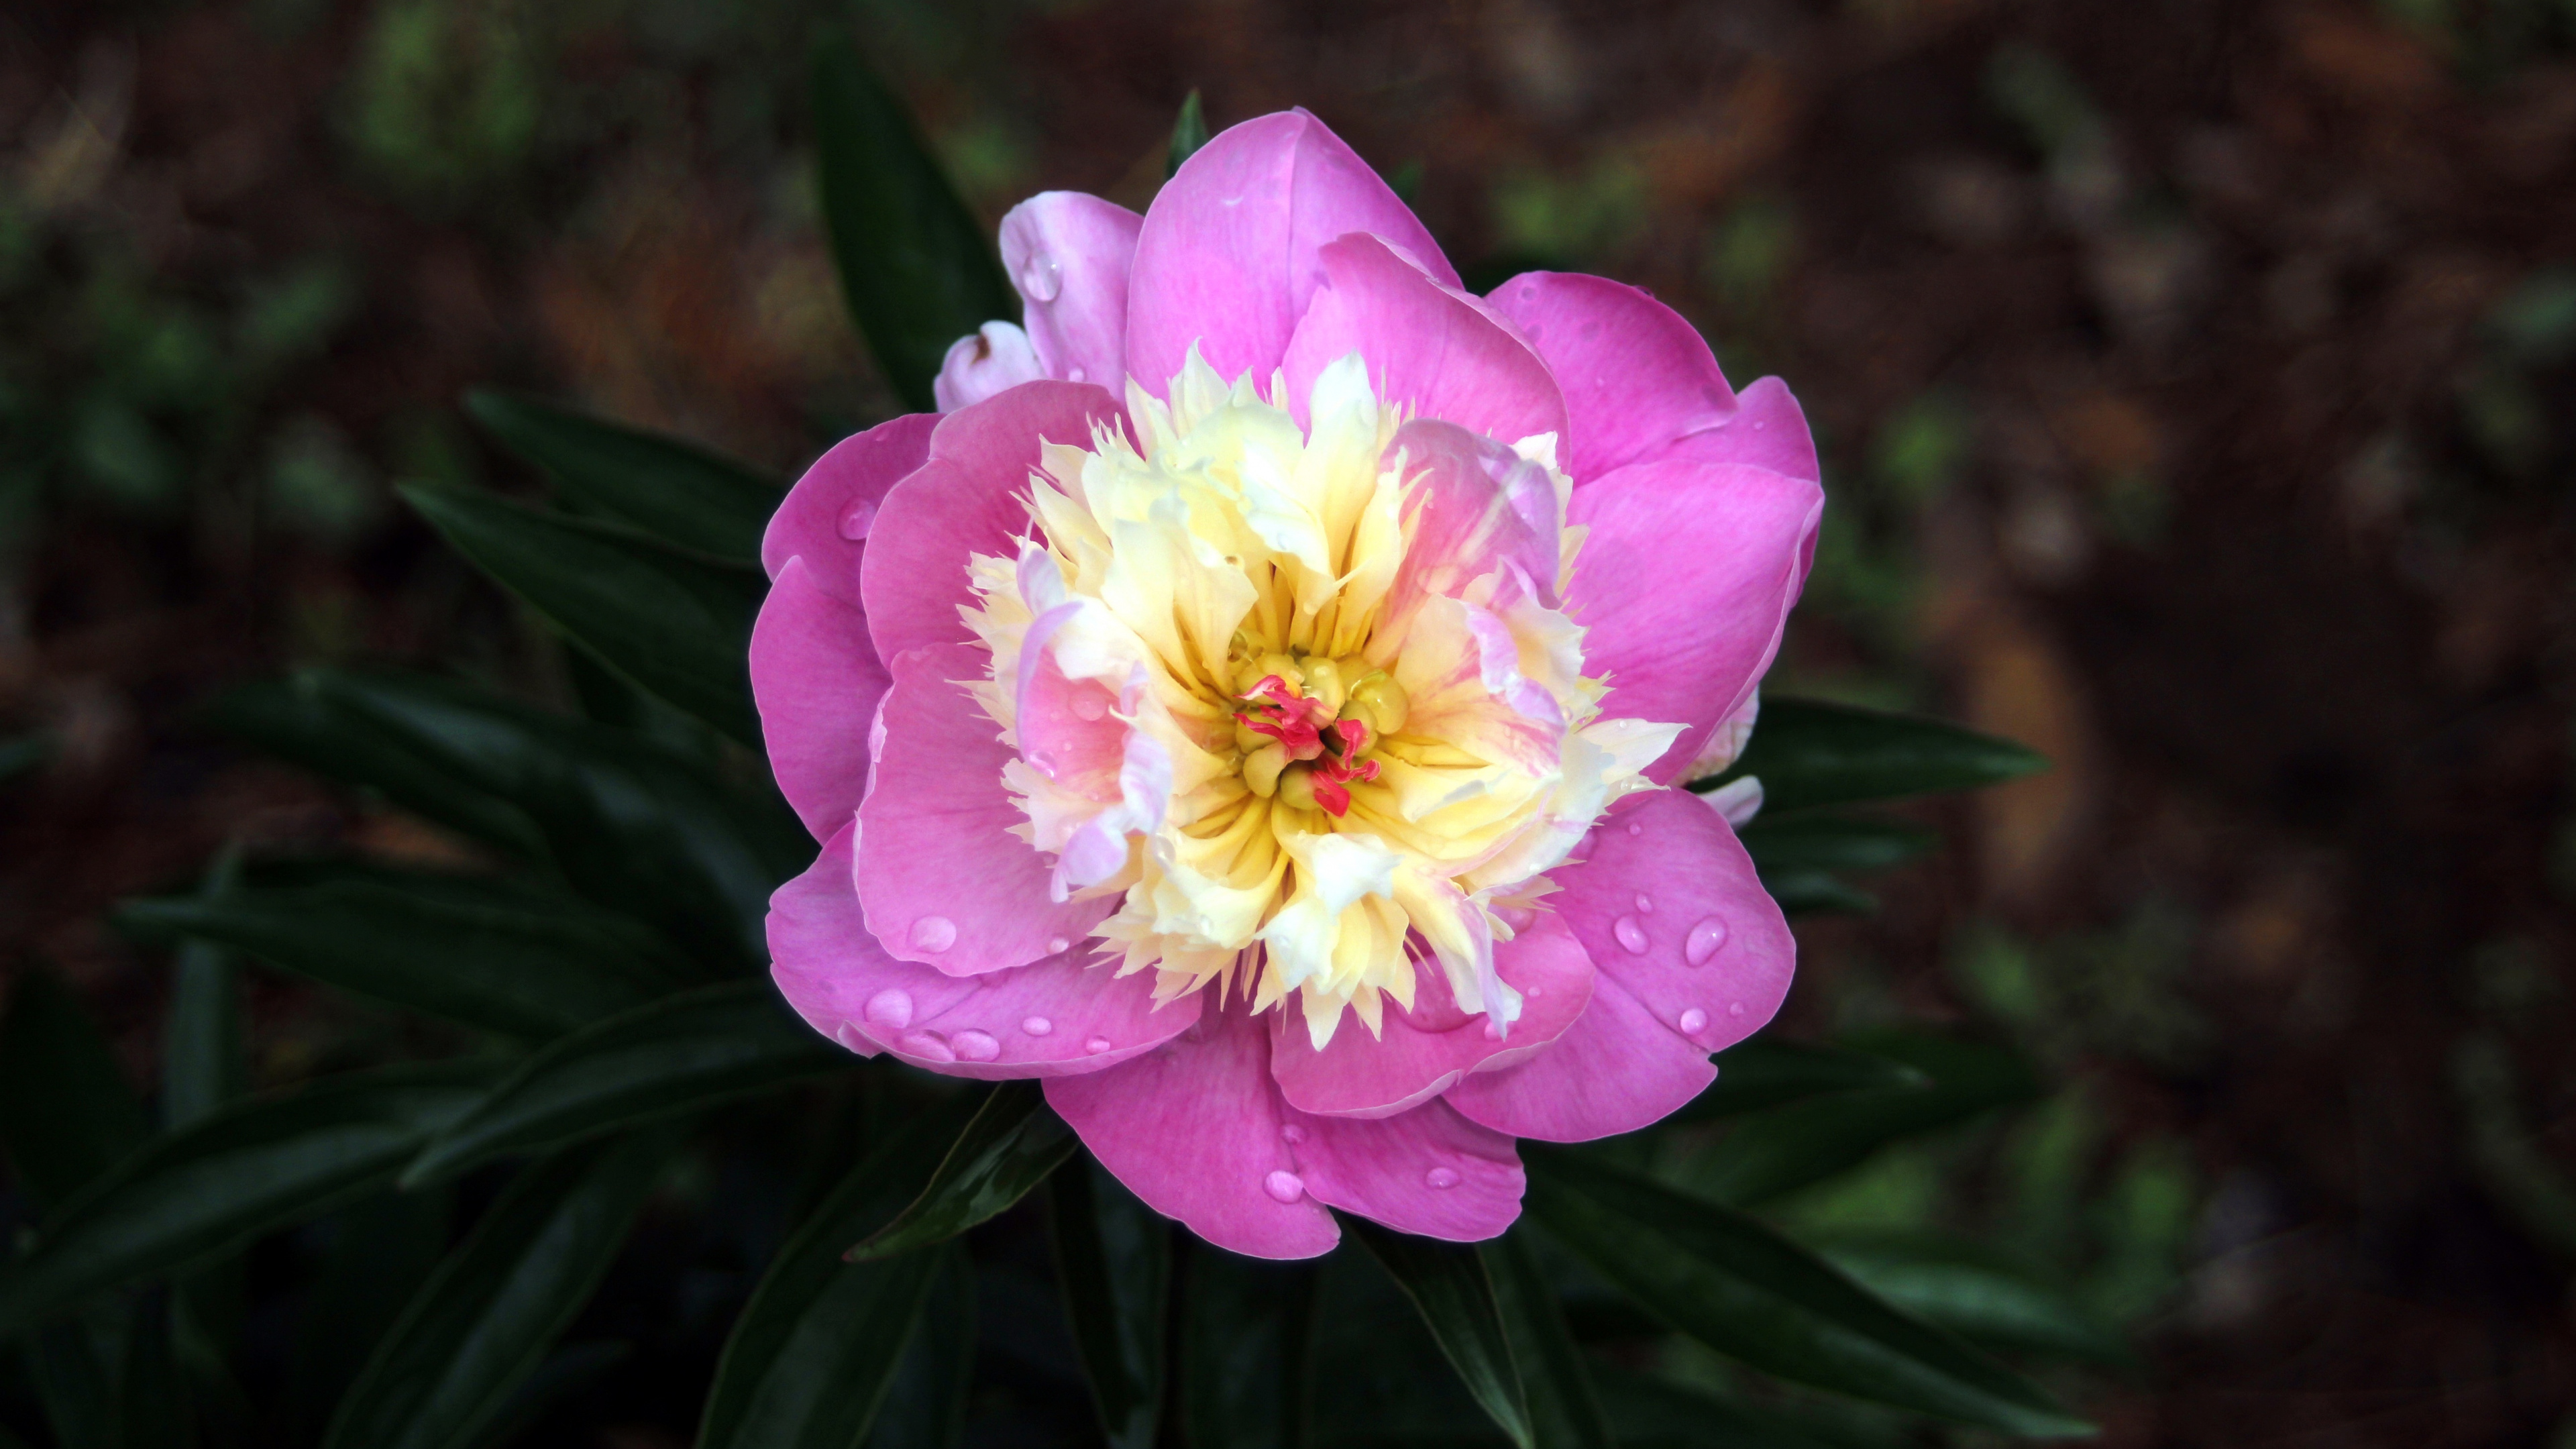 Pink Flower in Tilt Shift Lens. Wallpaper in 3840x2160 Resolution